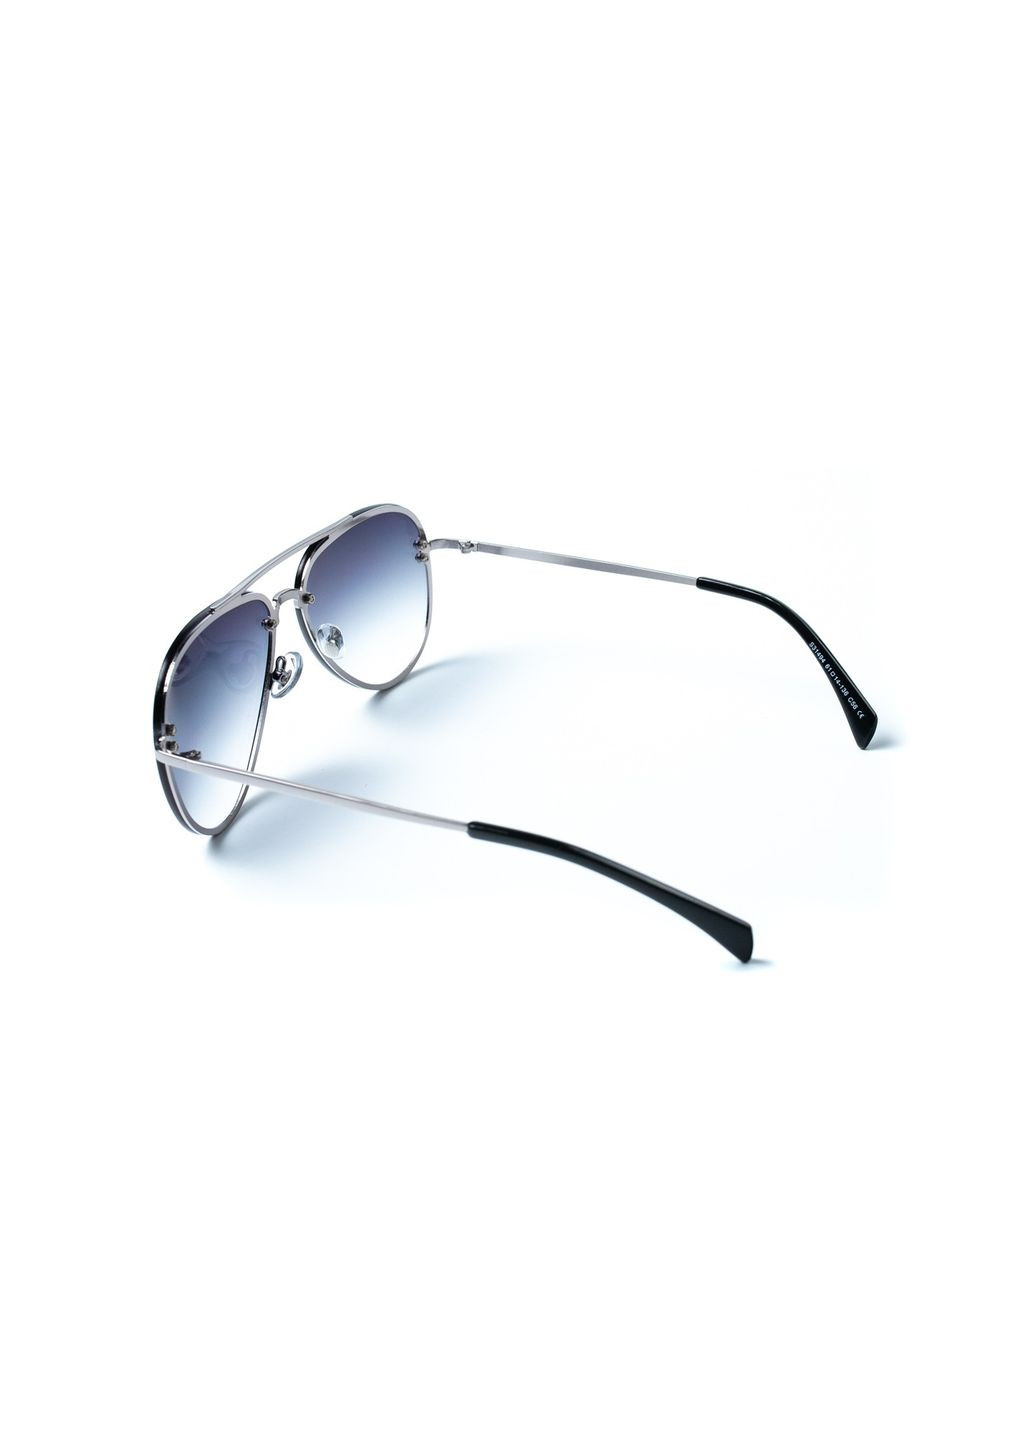 Солнцезащитные очки Авиаторы мужские 445-598 LuckyLOOK 445-598м (292735648)